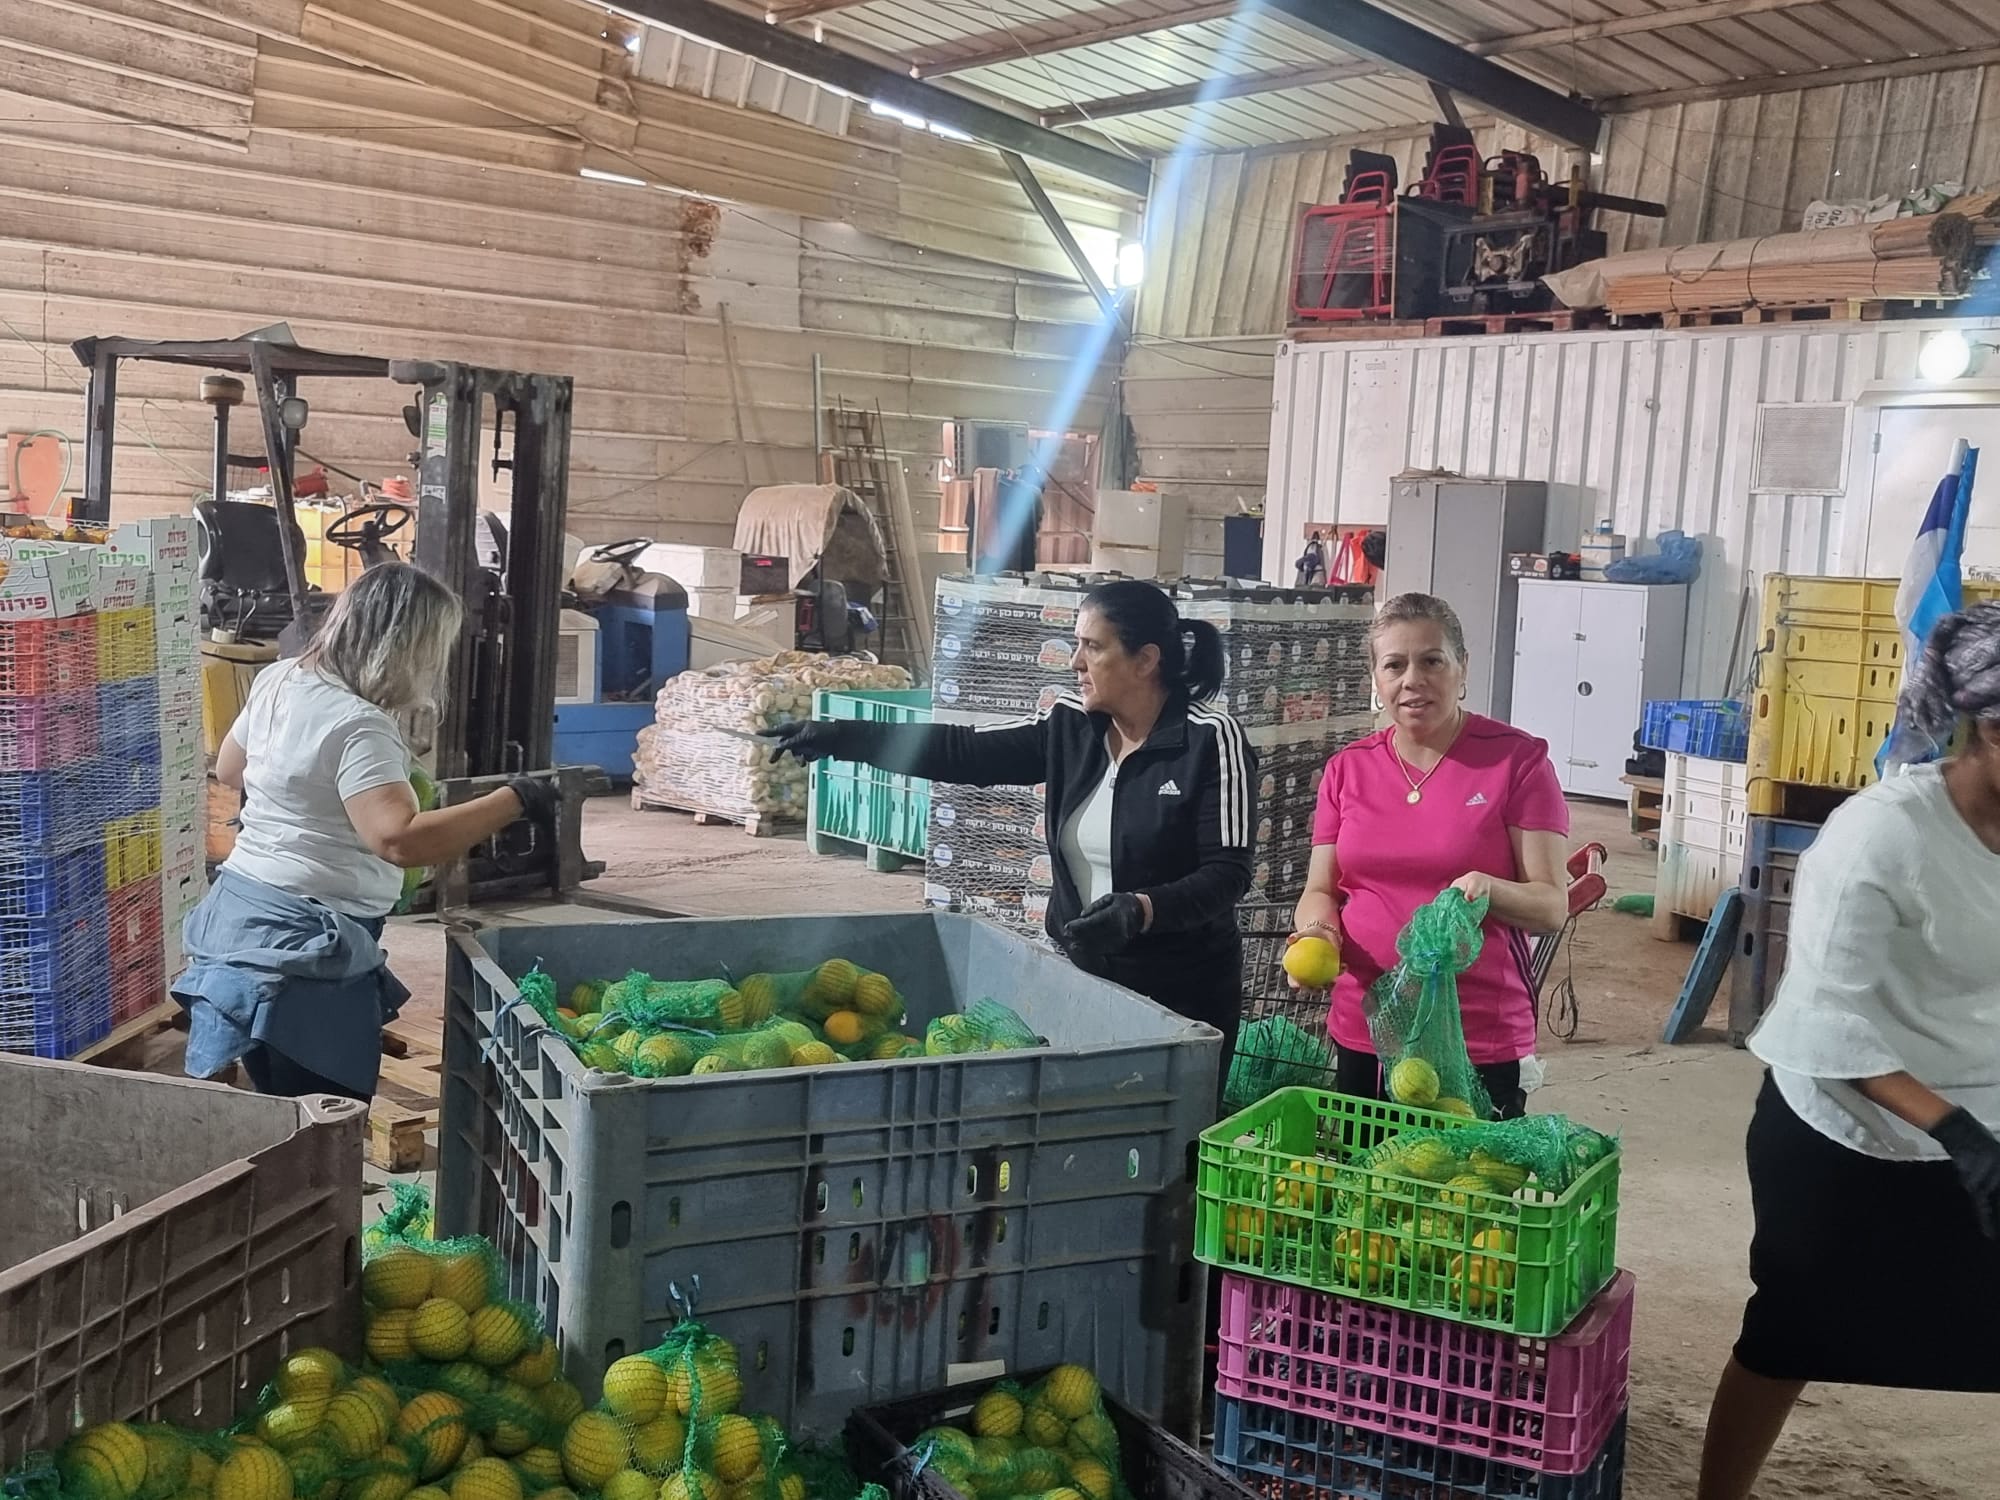 מסייעים בצו 8 לחקלאות: עובדי עיריית יבנה נרתמו למשימה הלאומית לסייע לחקלאי הדרום-2